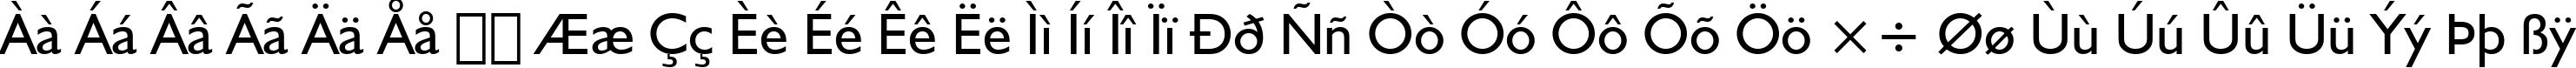 Пример написания русского алфавита шрифтом Humanist 521 BT